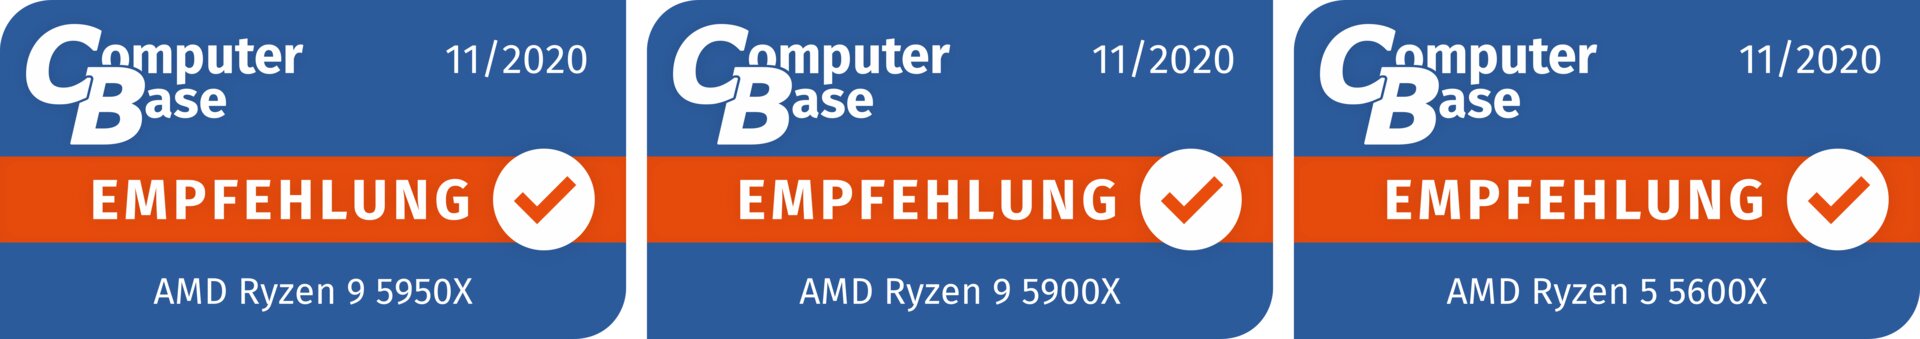 ComputerBase-Empfehlung für AMD Ryzen 9 5950X, Ryzen 9 5900X und Ryzen 5 5600X